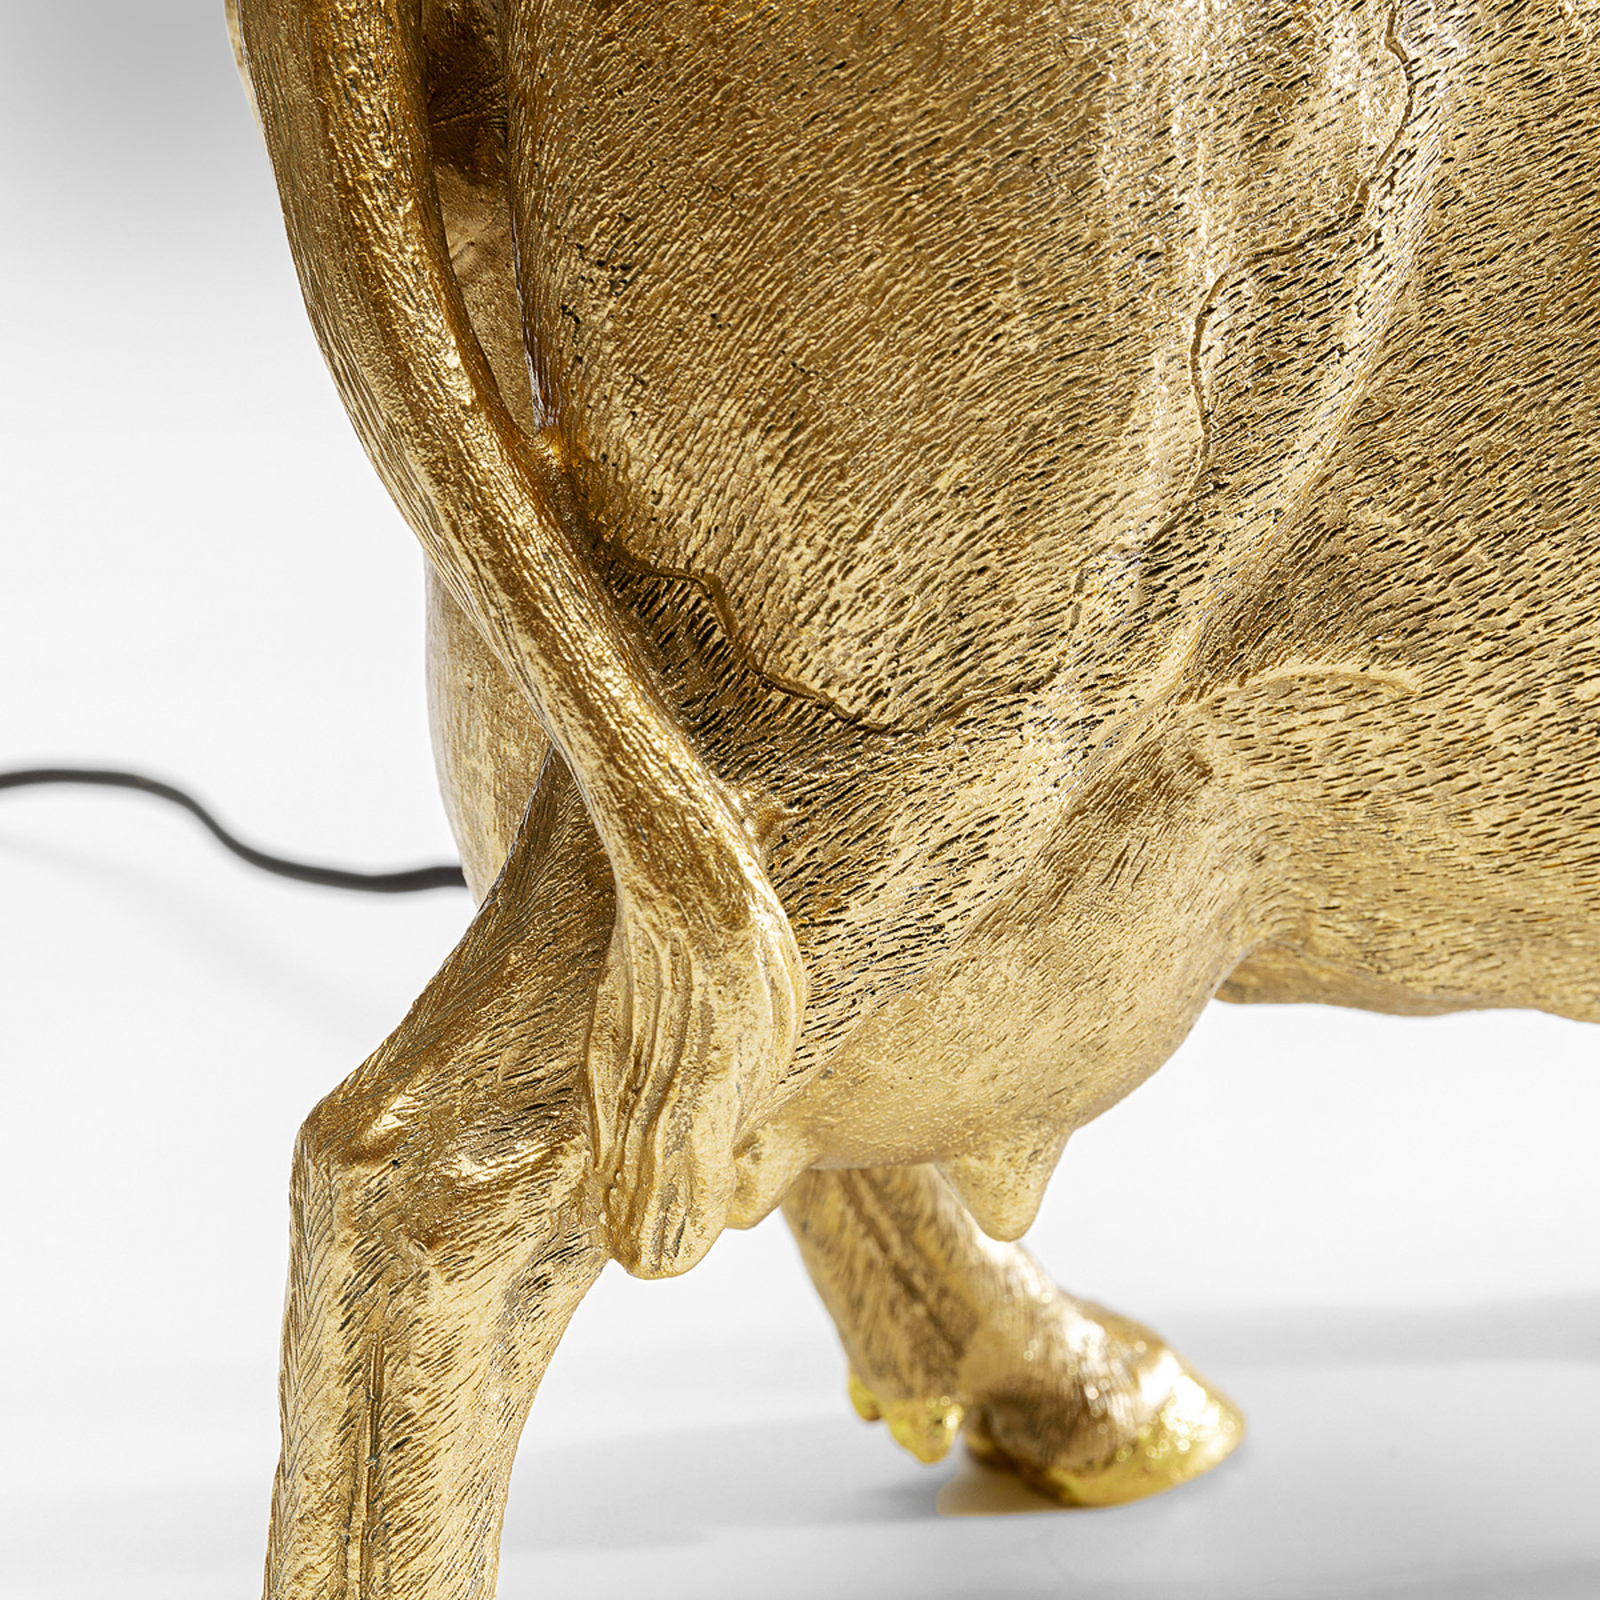 KARE Cow Gold lampe à poser avec abat-jour en lin